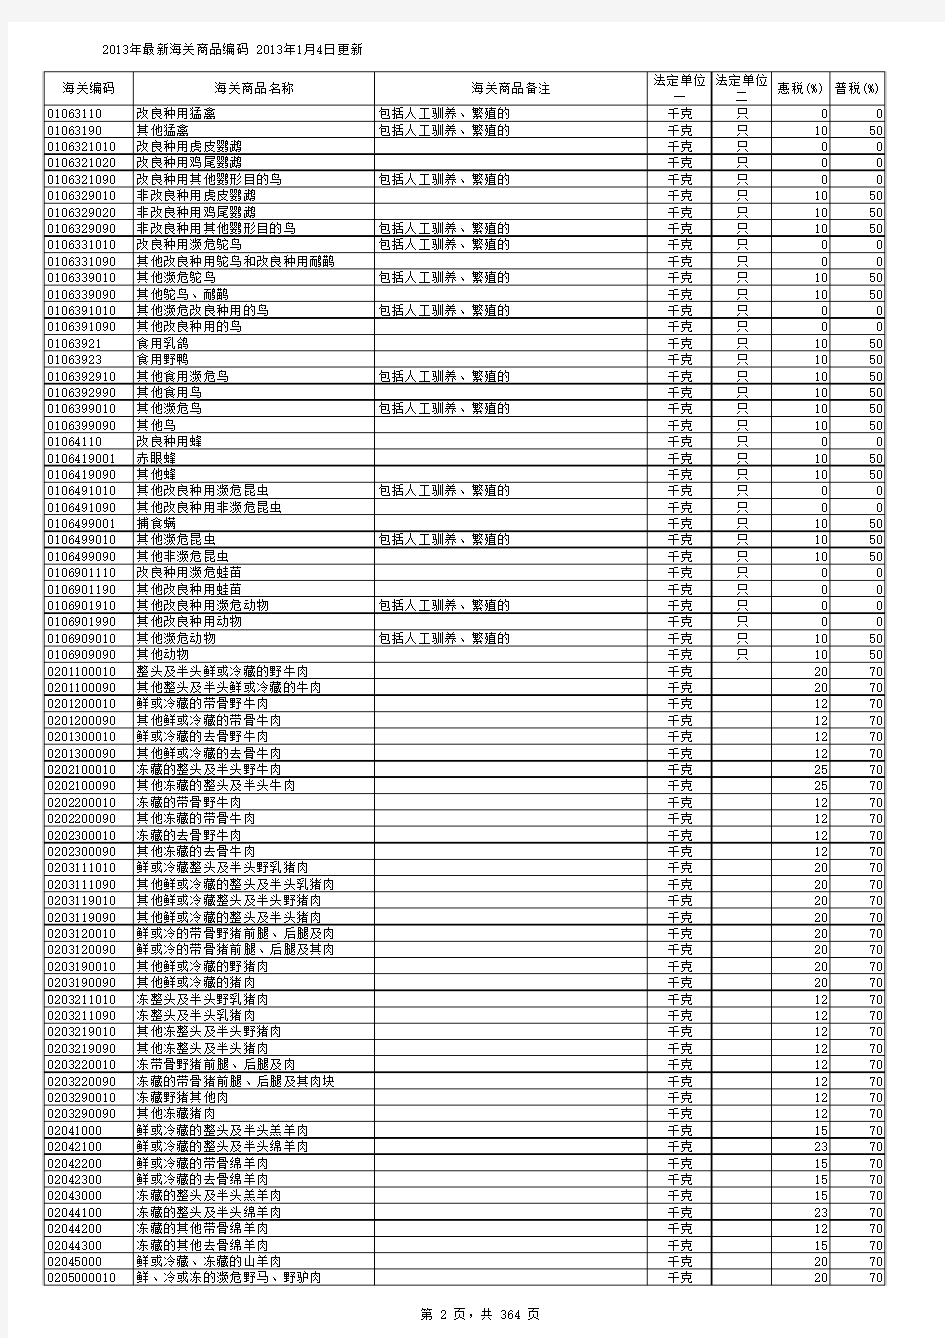 HS2013年海关商品编码表(120104更新)